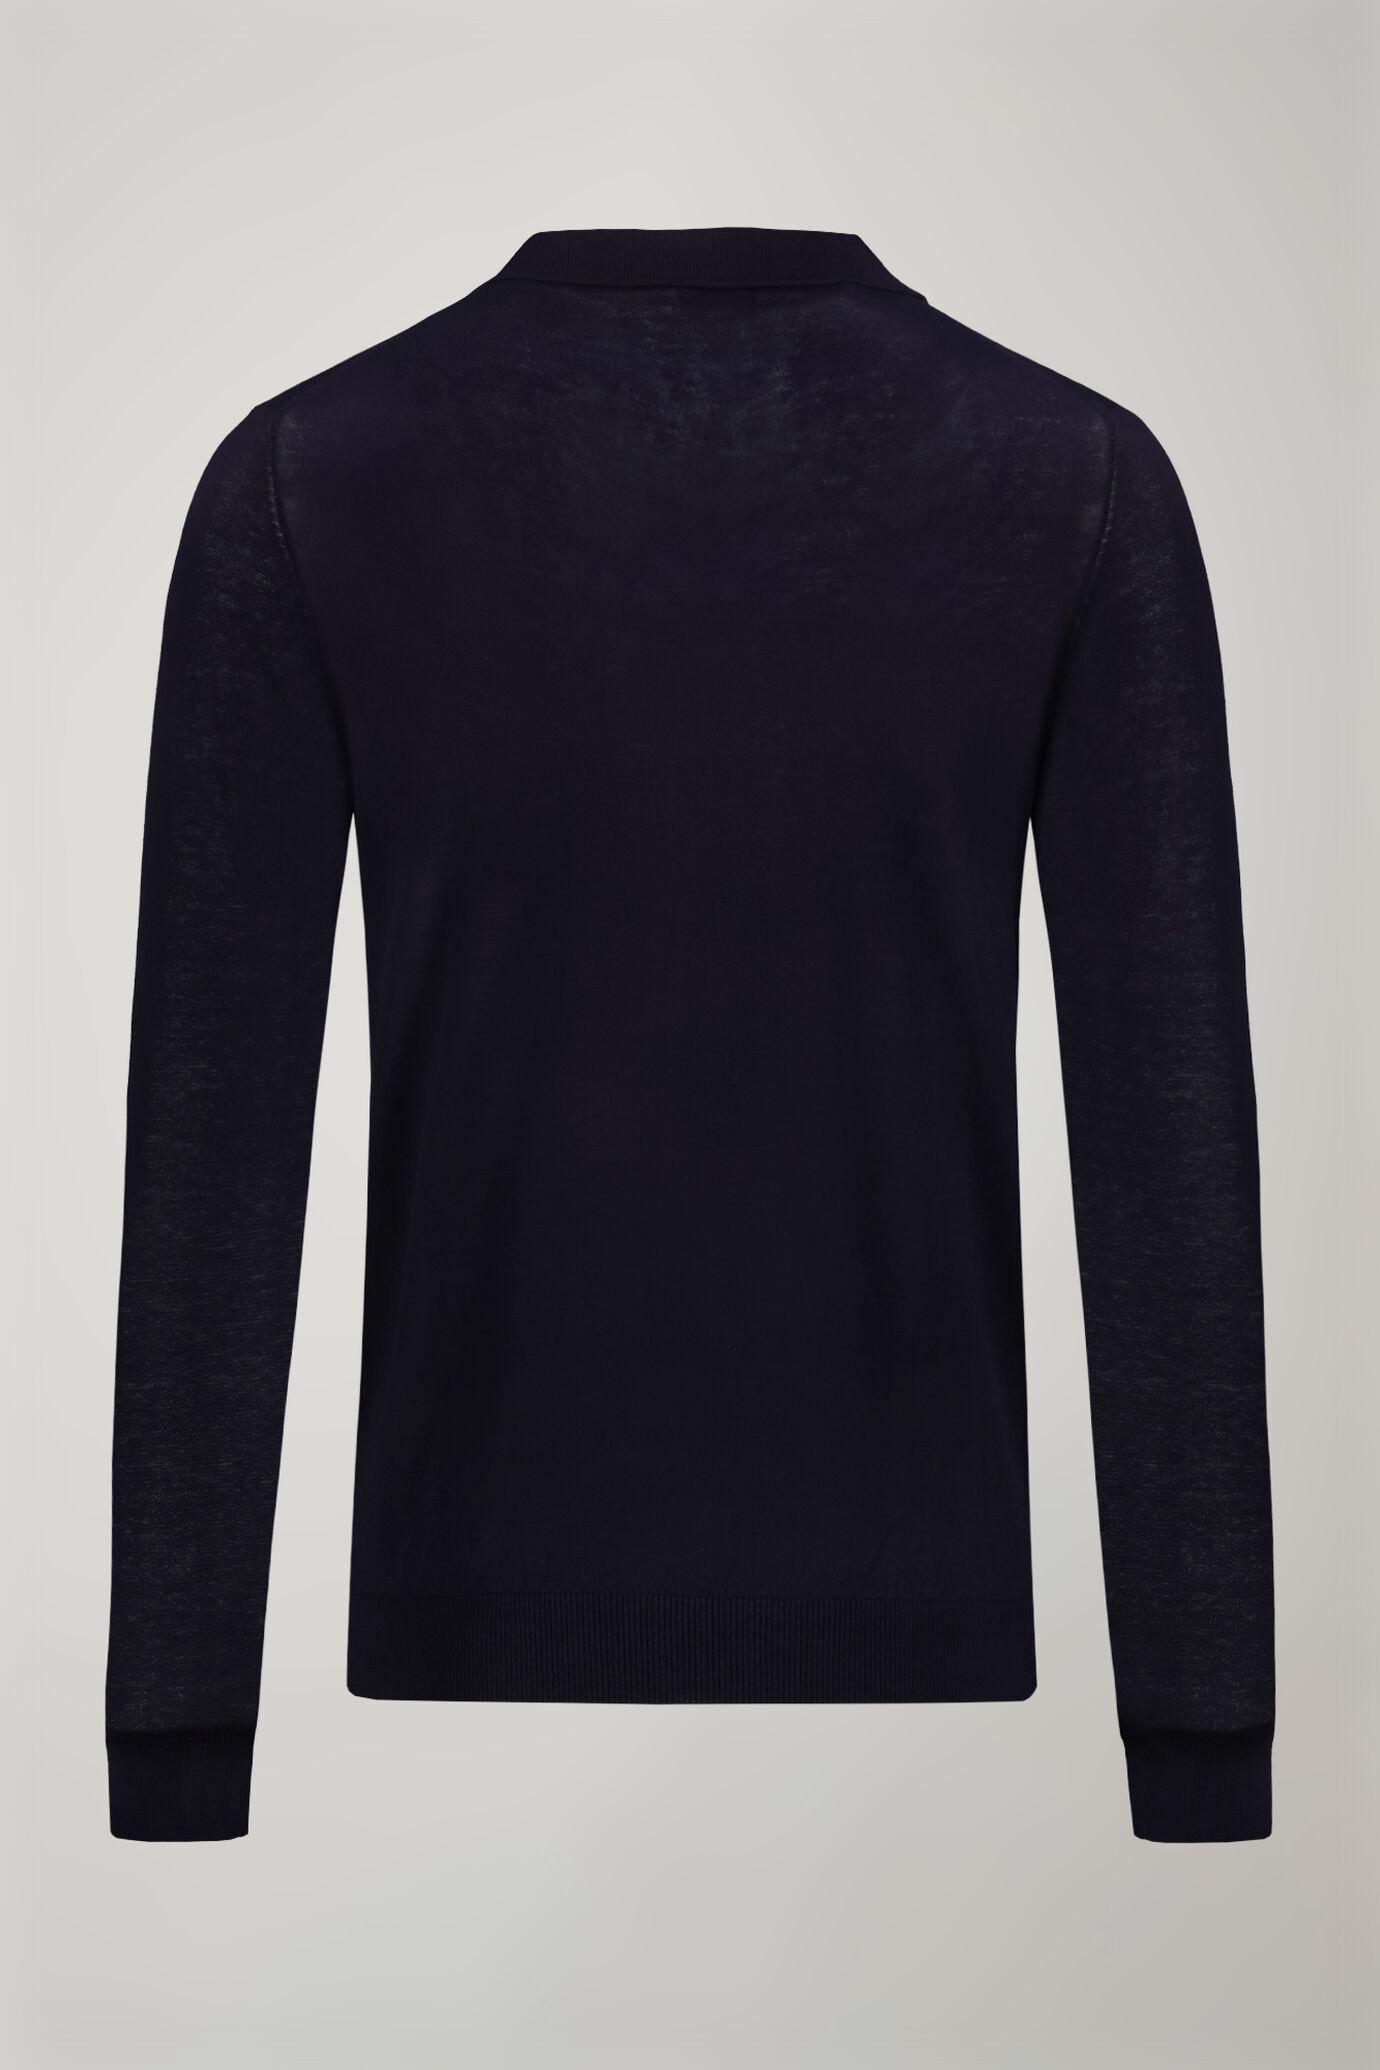 Herren-Poloshirt mit V-Ausschnitt aus 100 % Baumwollstrick und langen Ärmeln in normaler Passform image number 5